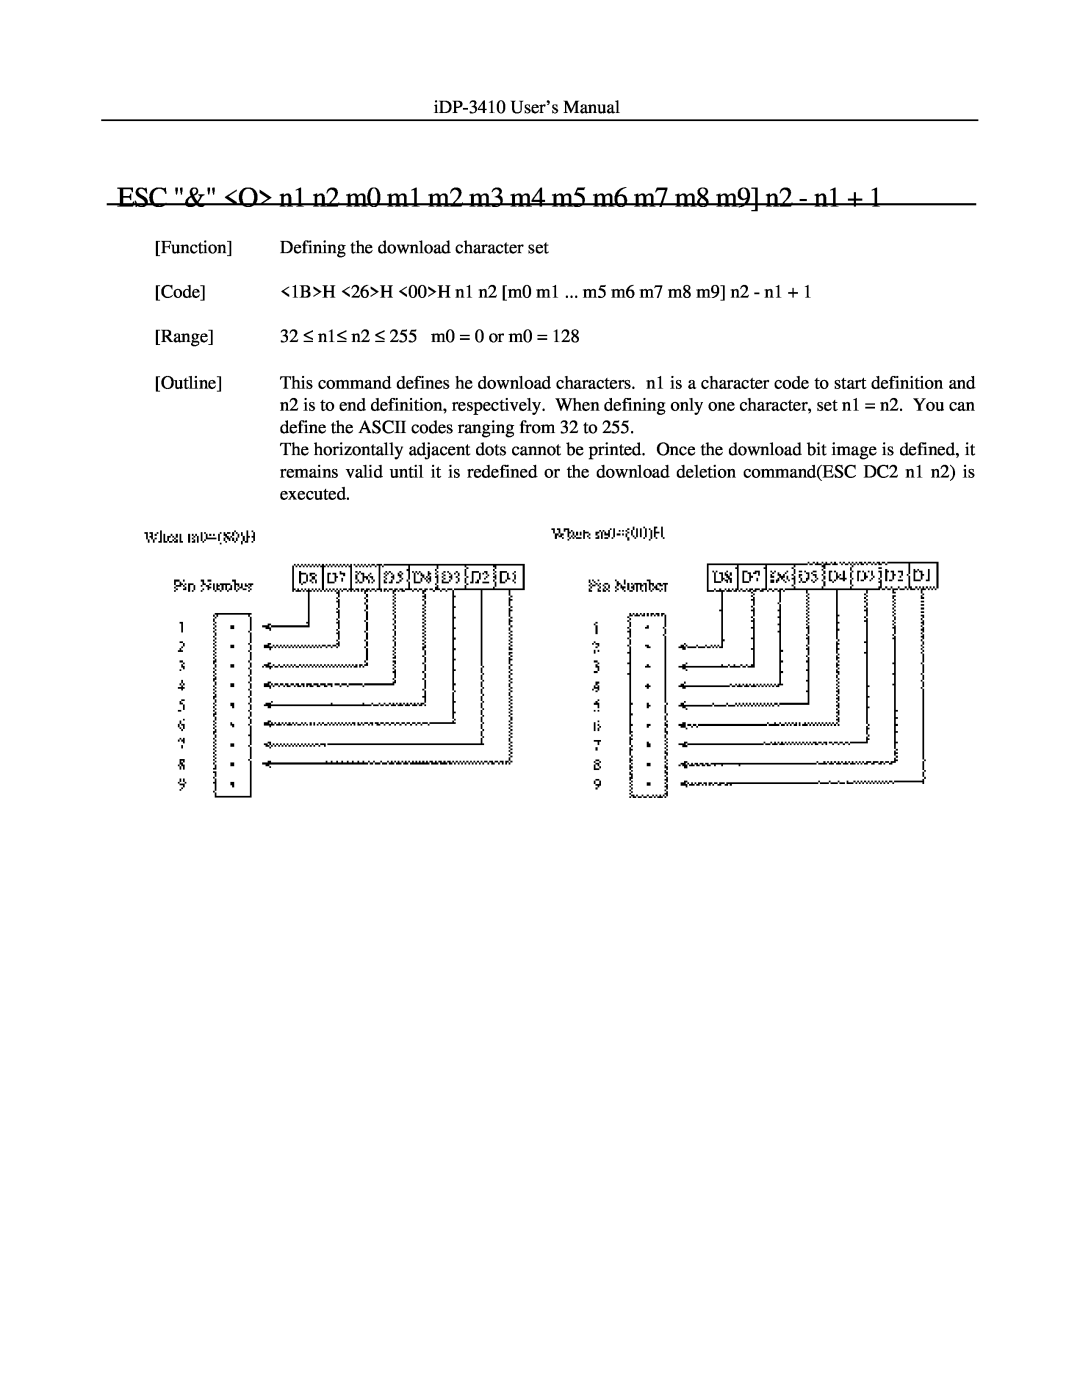 Addlogix iDP-3410 user manual ESC & O n1 n2 m0 m1 m2 m3 m4 m5 m6 m7 m8 m9 n2 - n1 + 